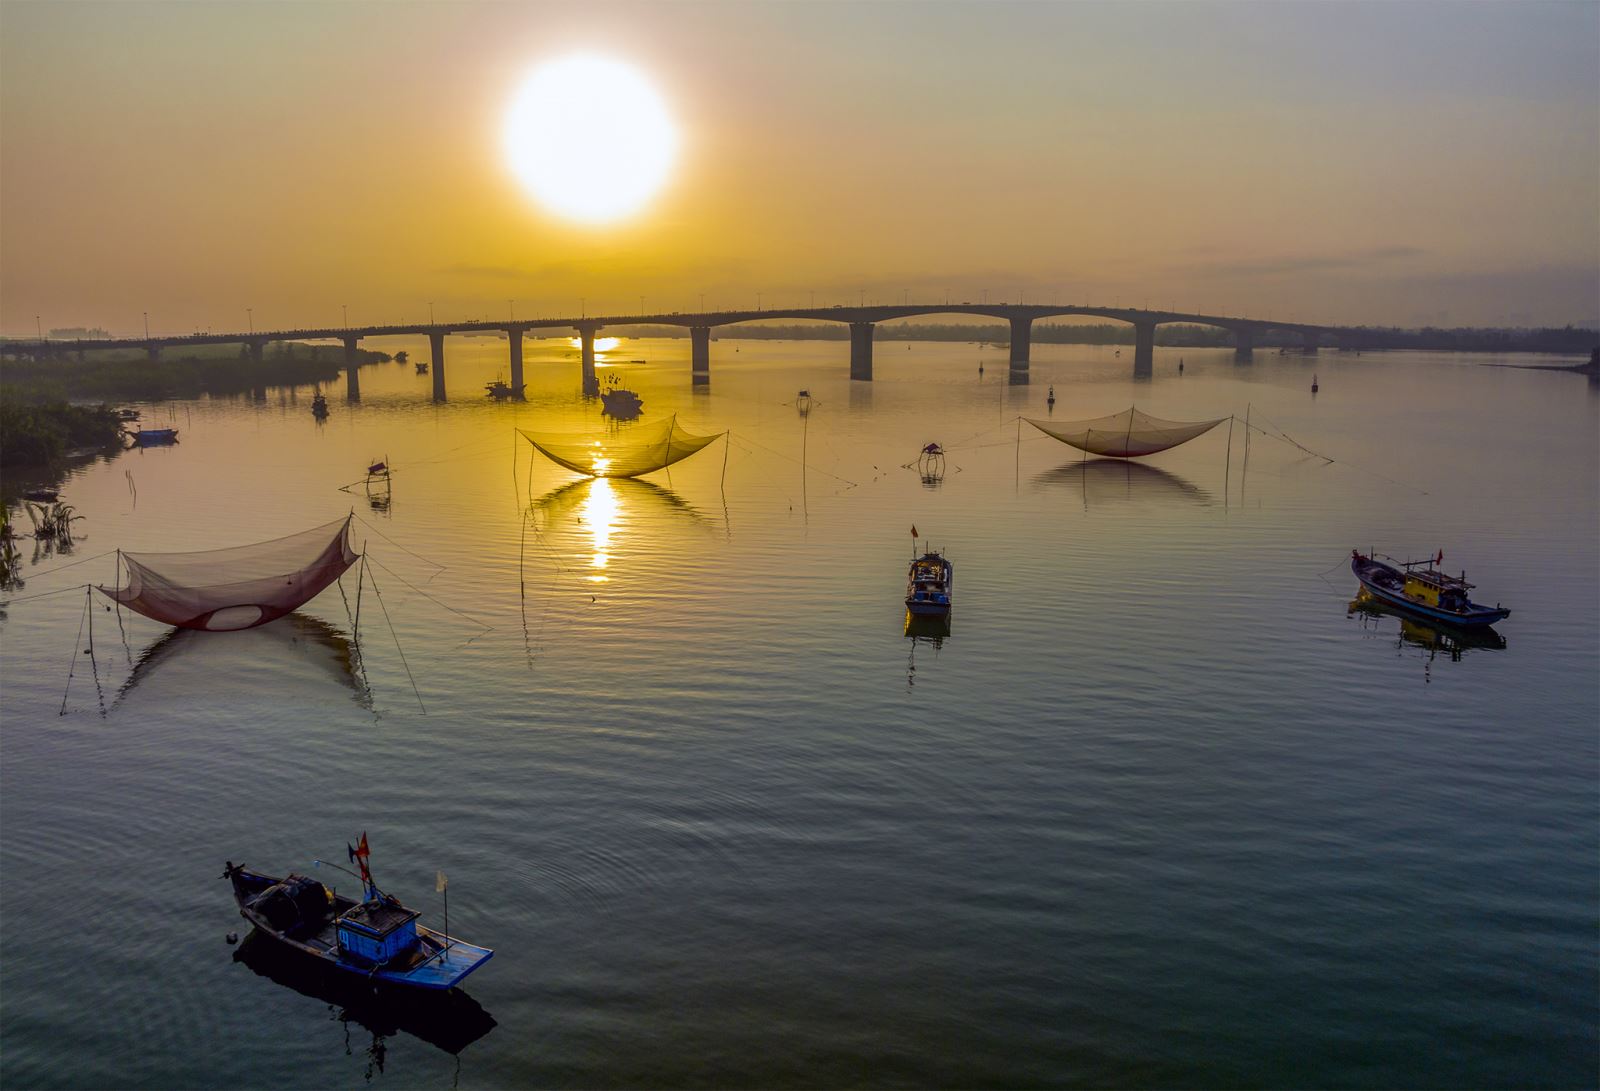 Cầu Cửa Đại là cây cầu dài nhất ở Quảng Nam đến thời điểm này, nhịp chính dài gần 1,5km nối liền Hội An và Duy Xuyên giúp cuộc sống. Phía xa xa là xã đảo Tân Hiệp - Cù Lao Chàm.